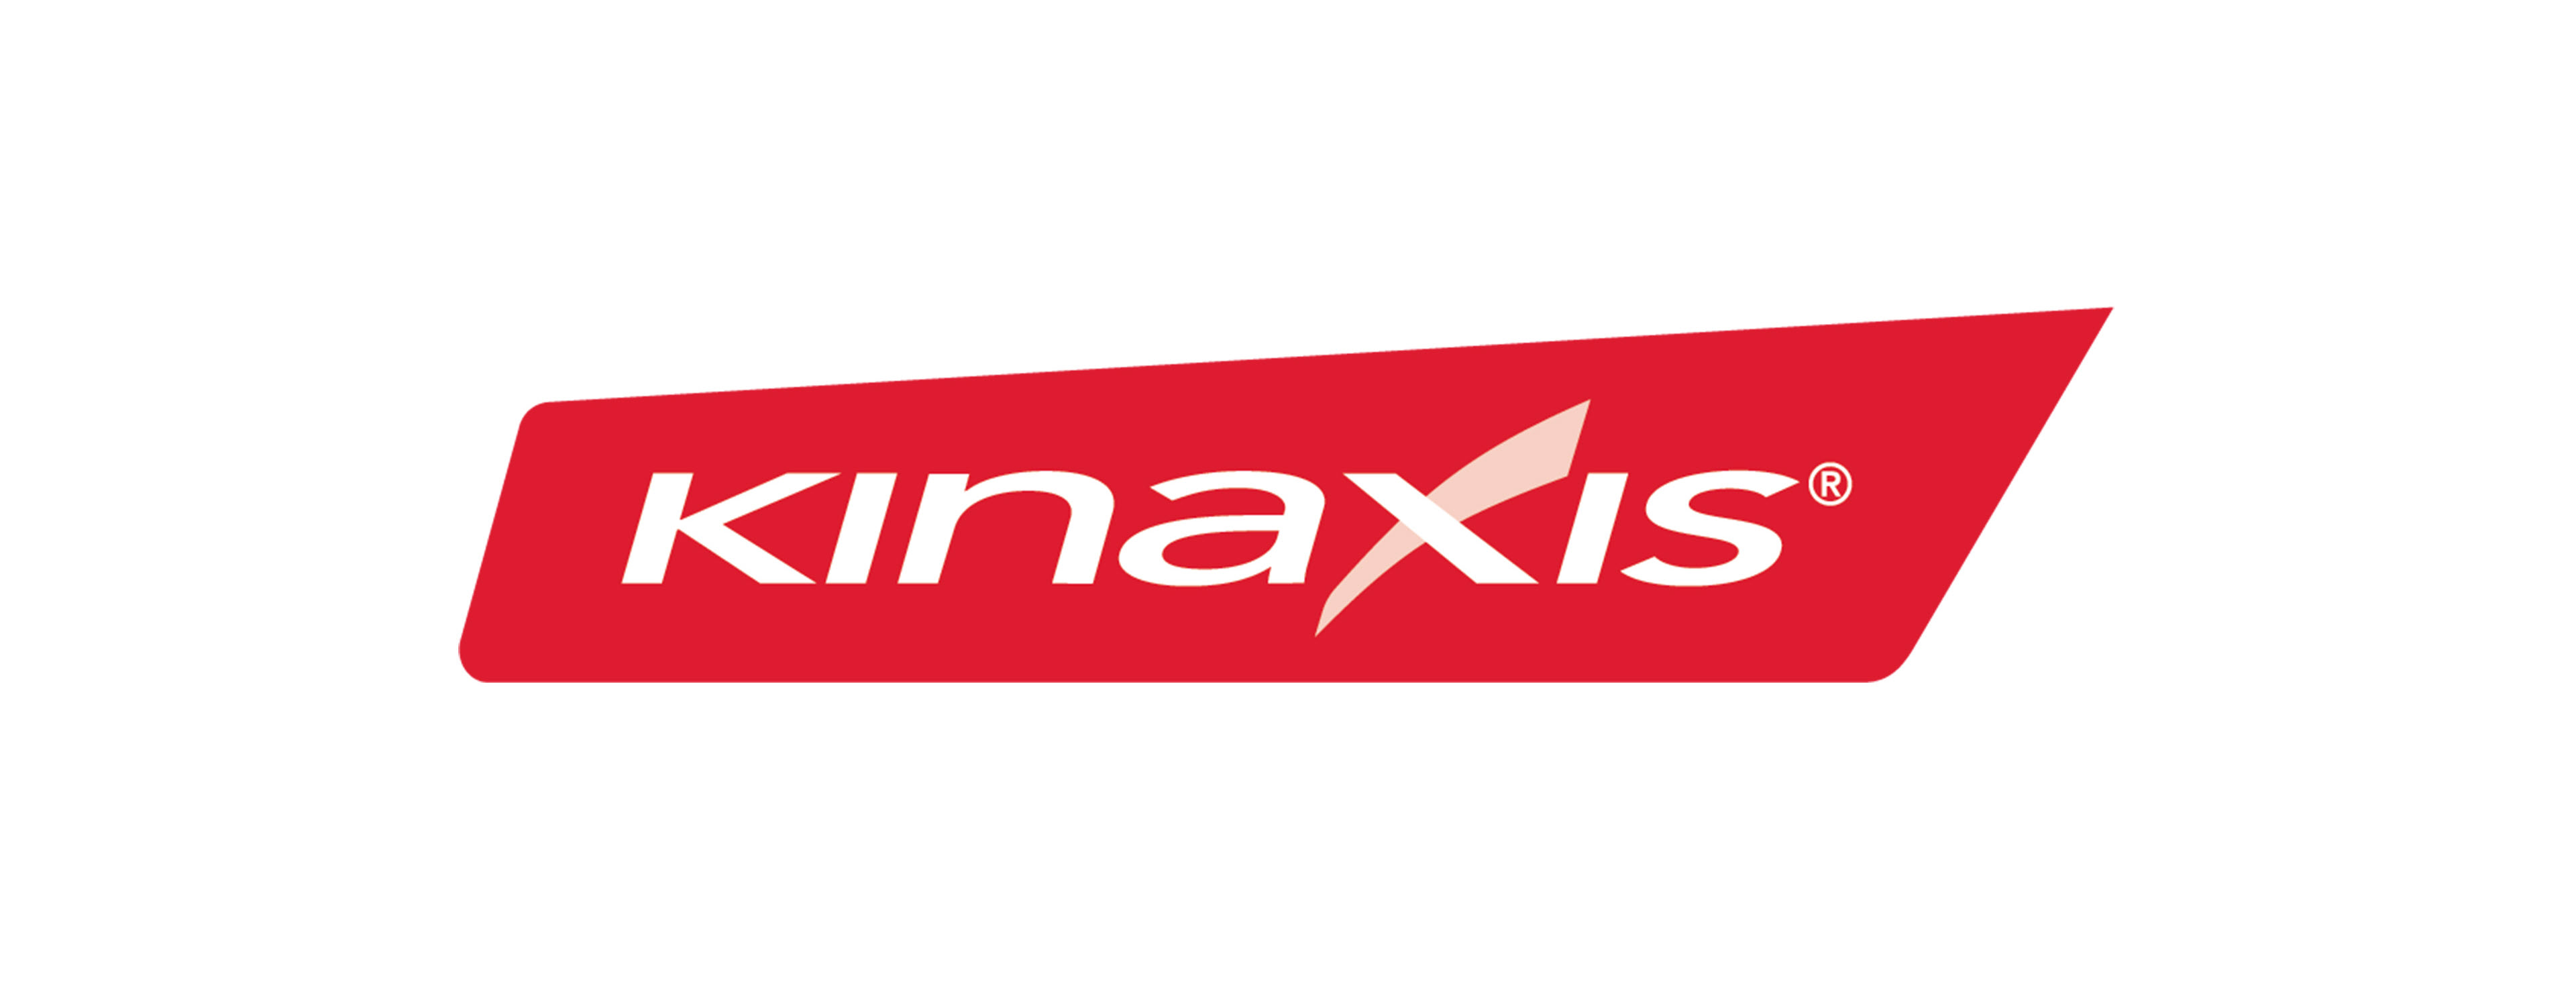             Kinaxis-Logo        